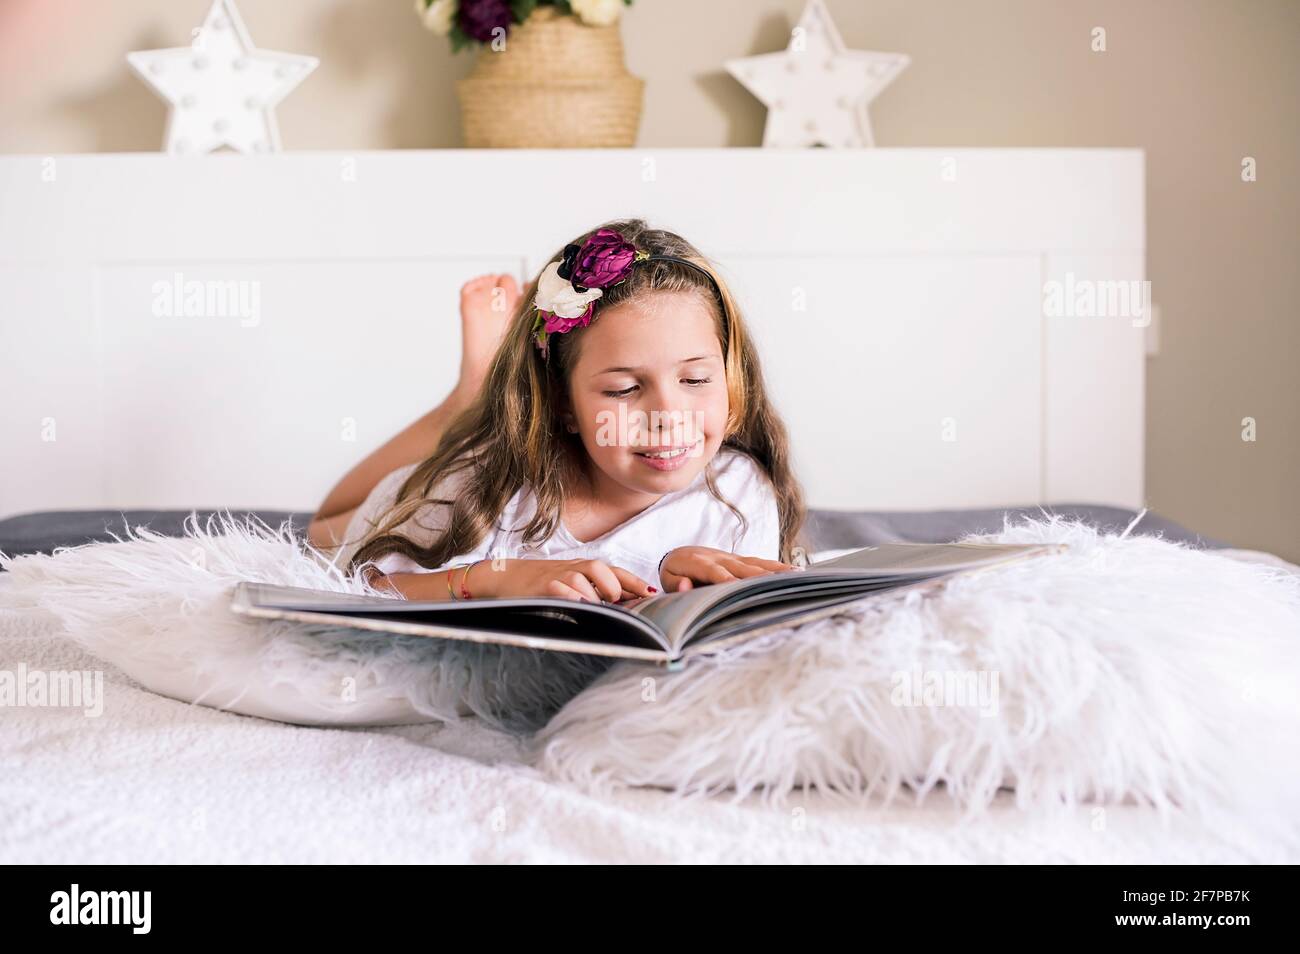 La bambina legge un libro sul letto in una stanza luminosa. Il bambino si  trova nella camera da letto con un libro e studia con entusiasmo il libro.  Spazio libero per il